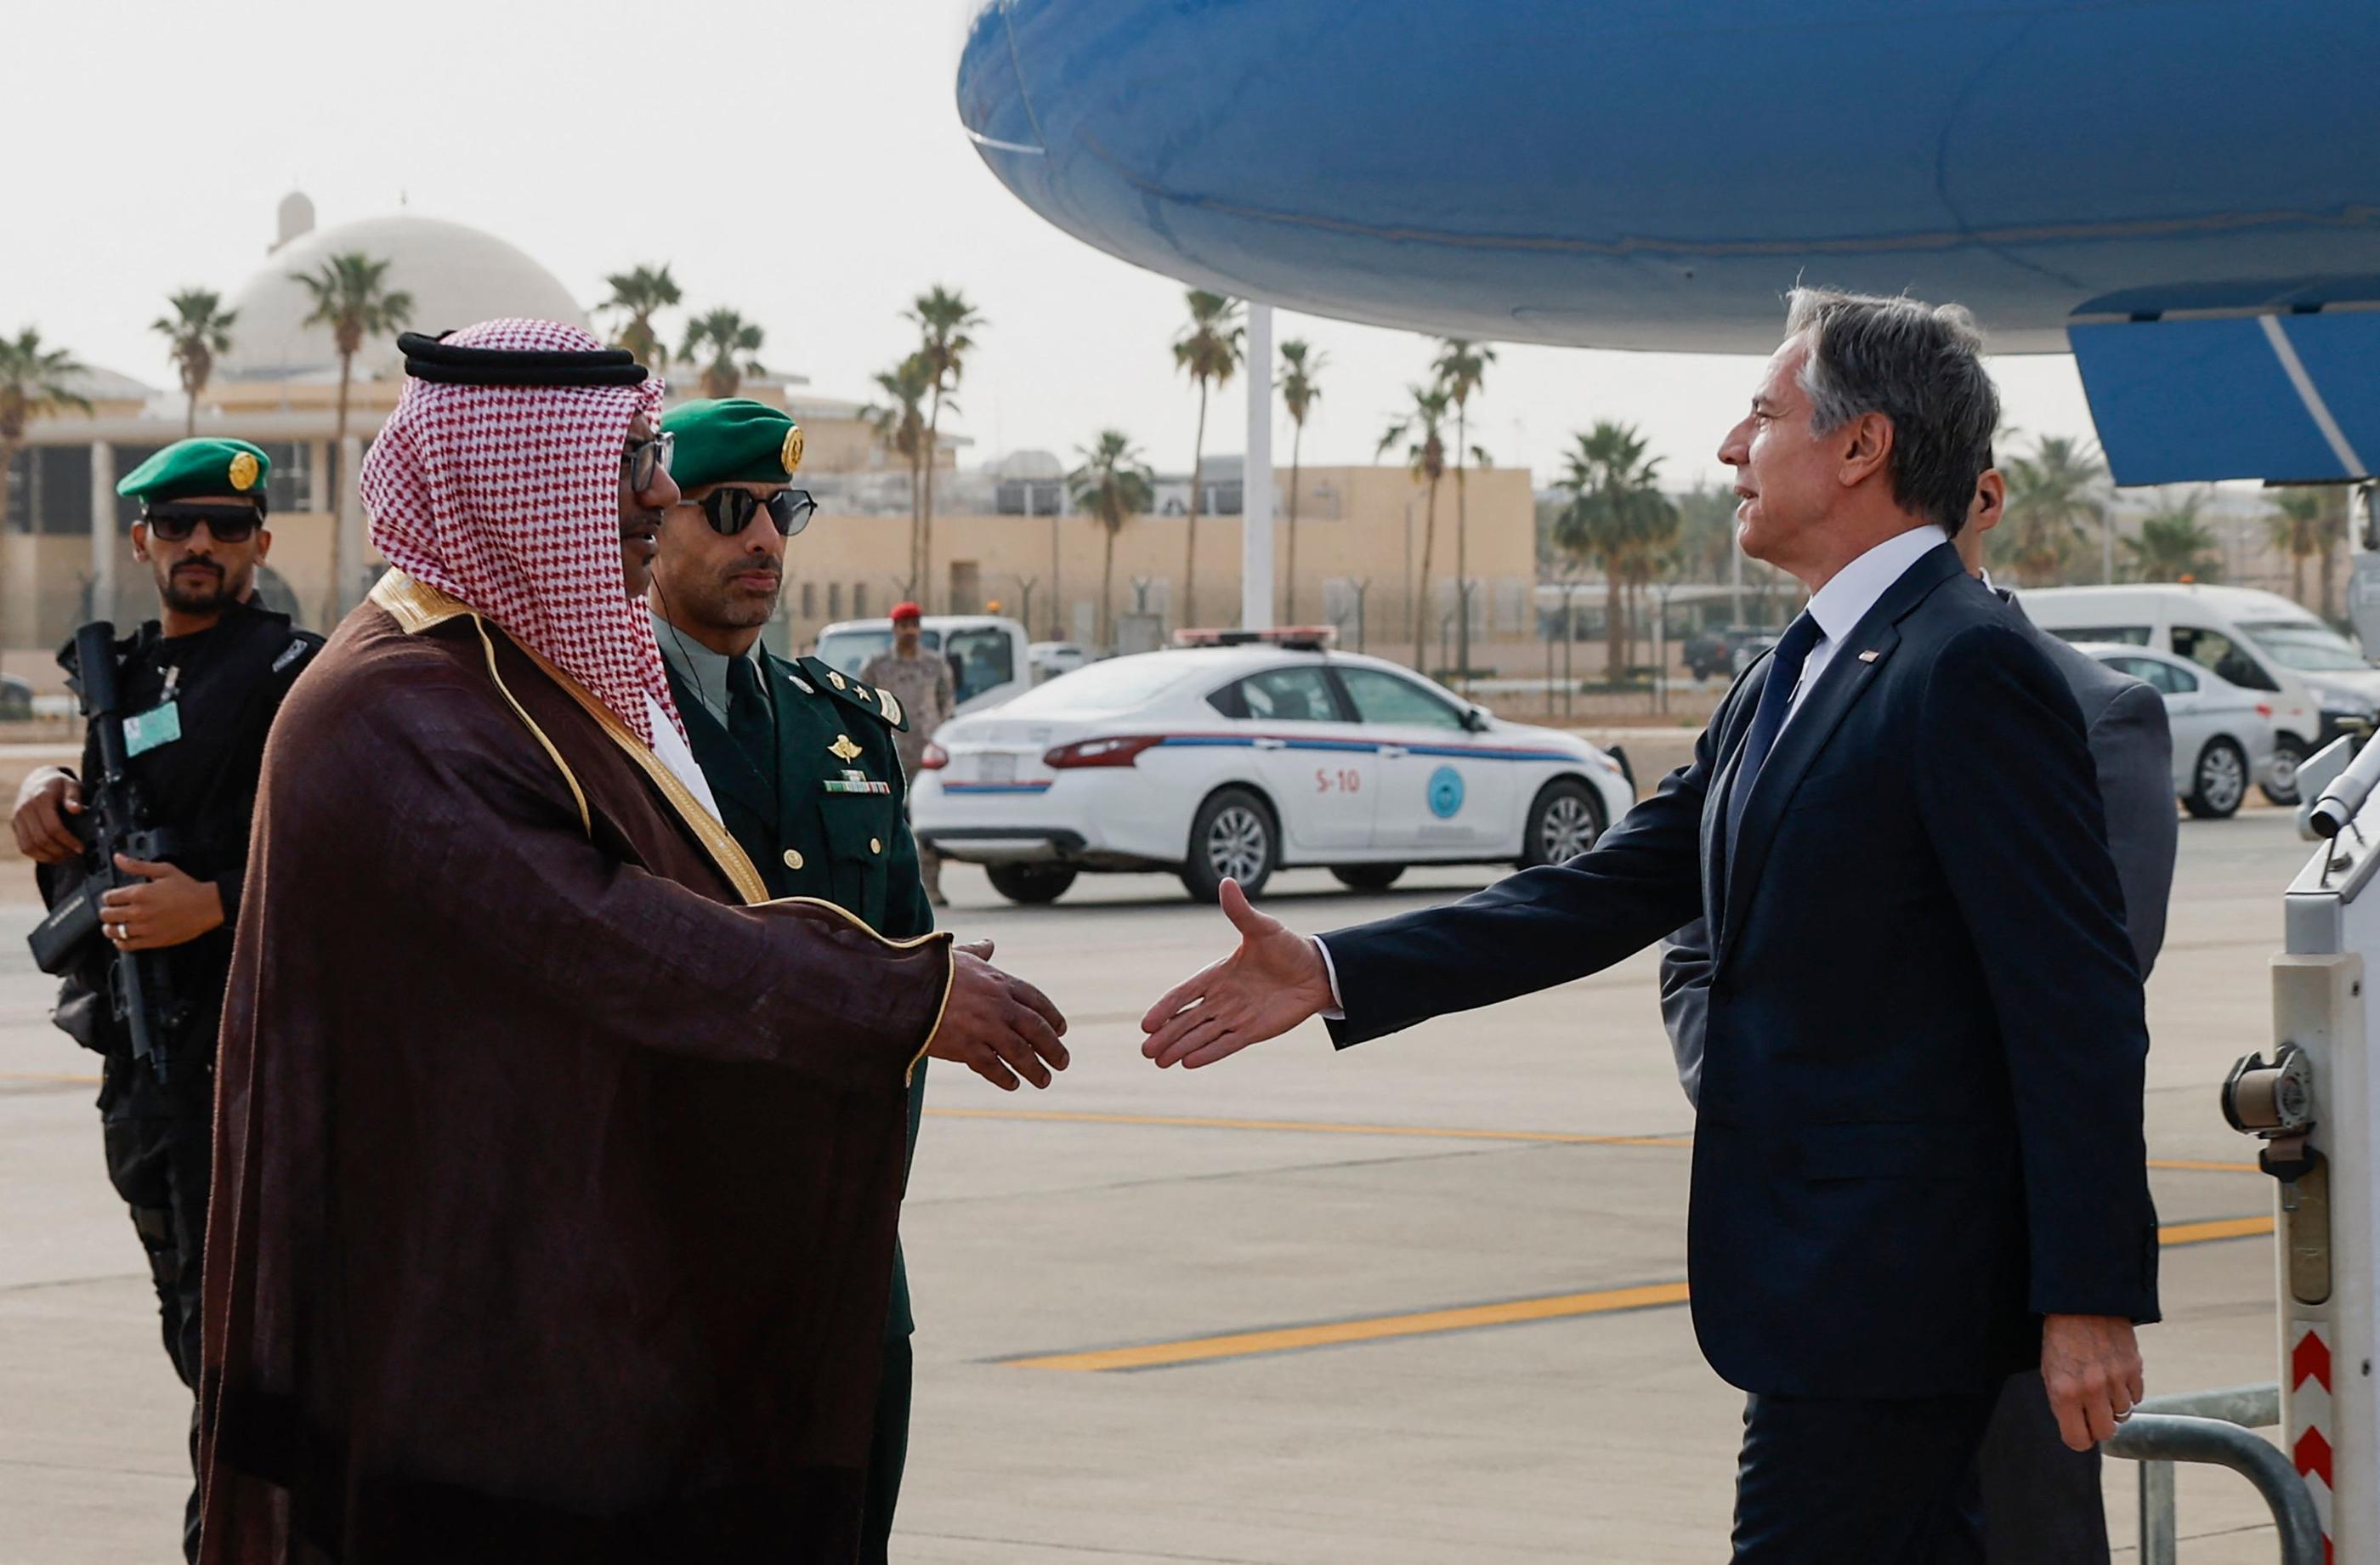 Le secrétaire d'Etat américain est arrivé à Riyad ce lundi, où il a été accueilli par le ministre des Affaires étrangères saoudien. EVELYN HOCKSTEIN / POOL / AFP